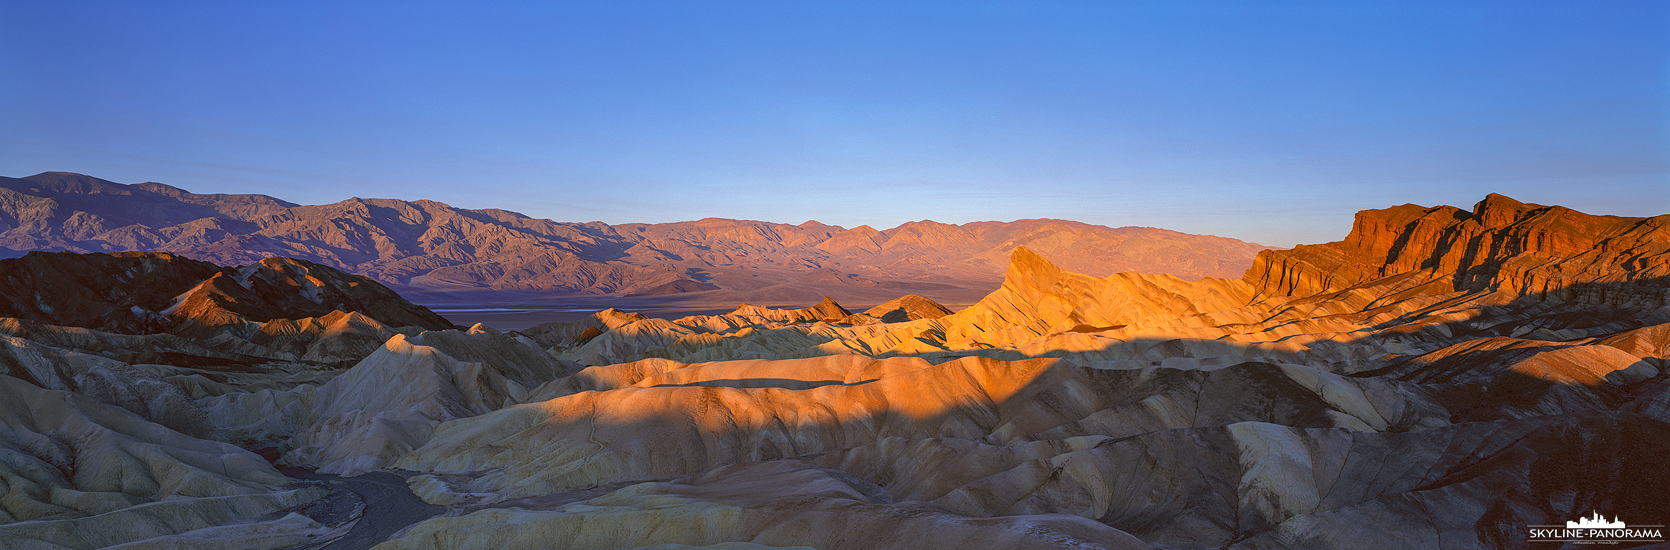 Sehenswürdigkeiten im Death Valley - Einer der beliebtesten Aussichtspunkte im Death Valley Nationalpark in Kalifornien ist der Zabriskie Point, er bietet seinen Besuchern gerade zum Sonnenaufgang und Sonnenuntergang einen unvergesslichen Blick in das "Tal des Todes". Dieses 6x17 Panorama zeigt die von den ersten Sonnenstrahlen des Tages erleuchteten Berghänge der Panamint Range im Hintergrund und die durch Erosion entstandenen Gesteinsformationen der Amargosa Range im Vordergrund.